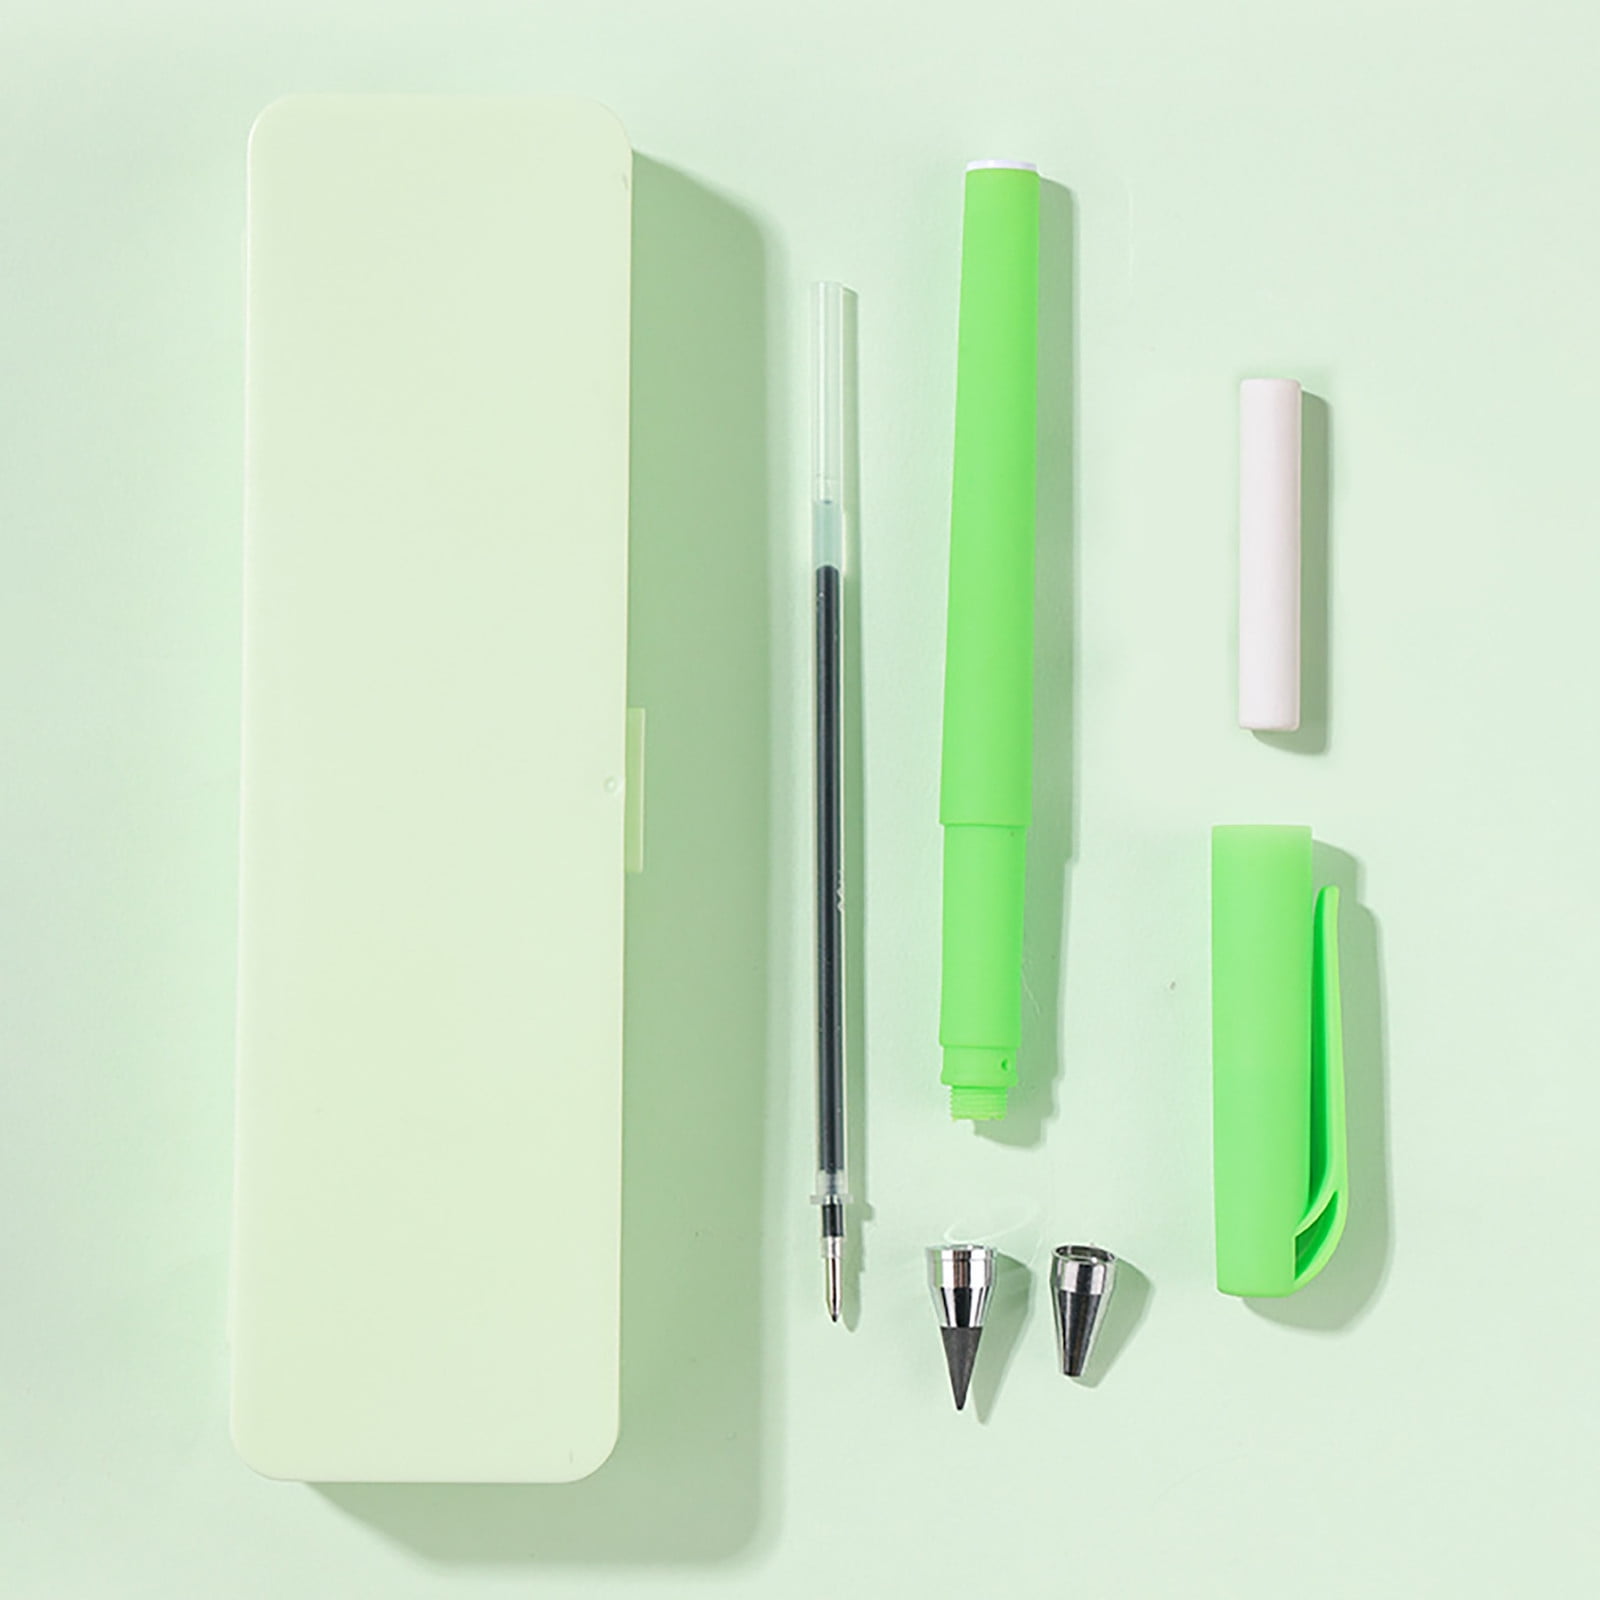 Xiaomi Pen Gel Pen x10 Pack - Forestals